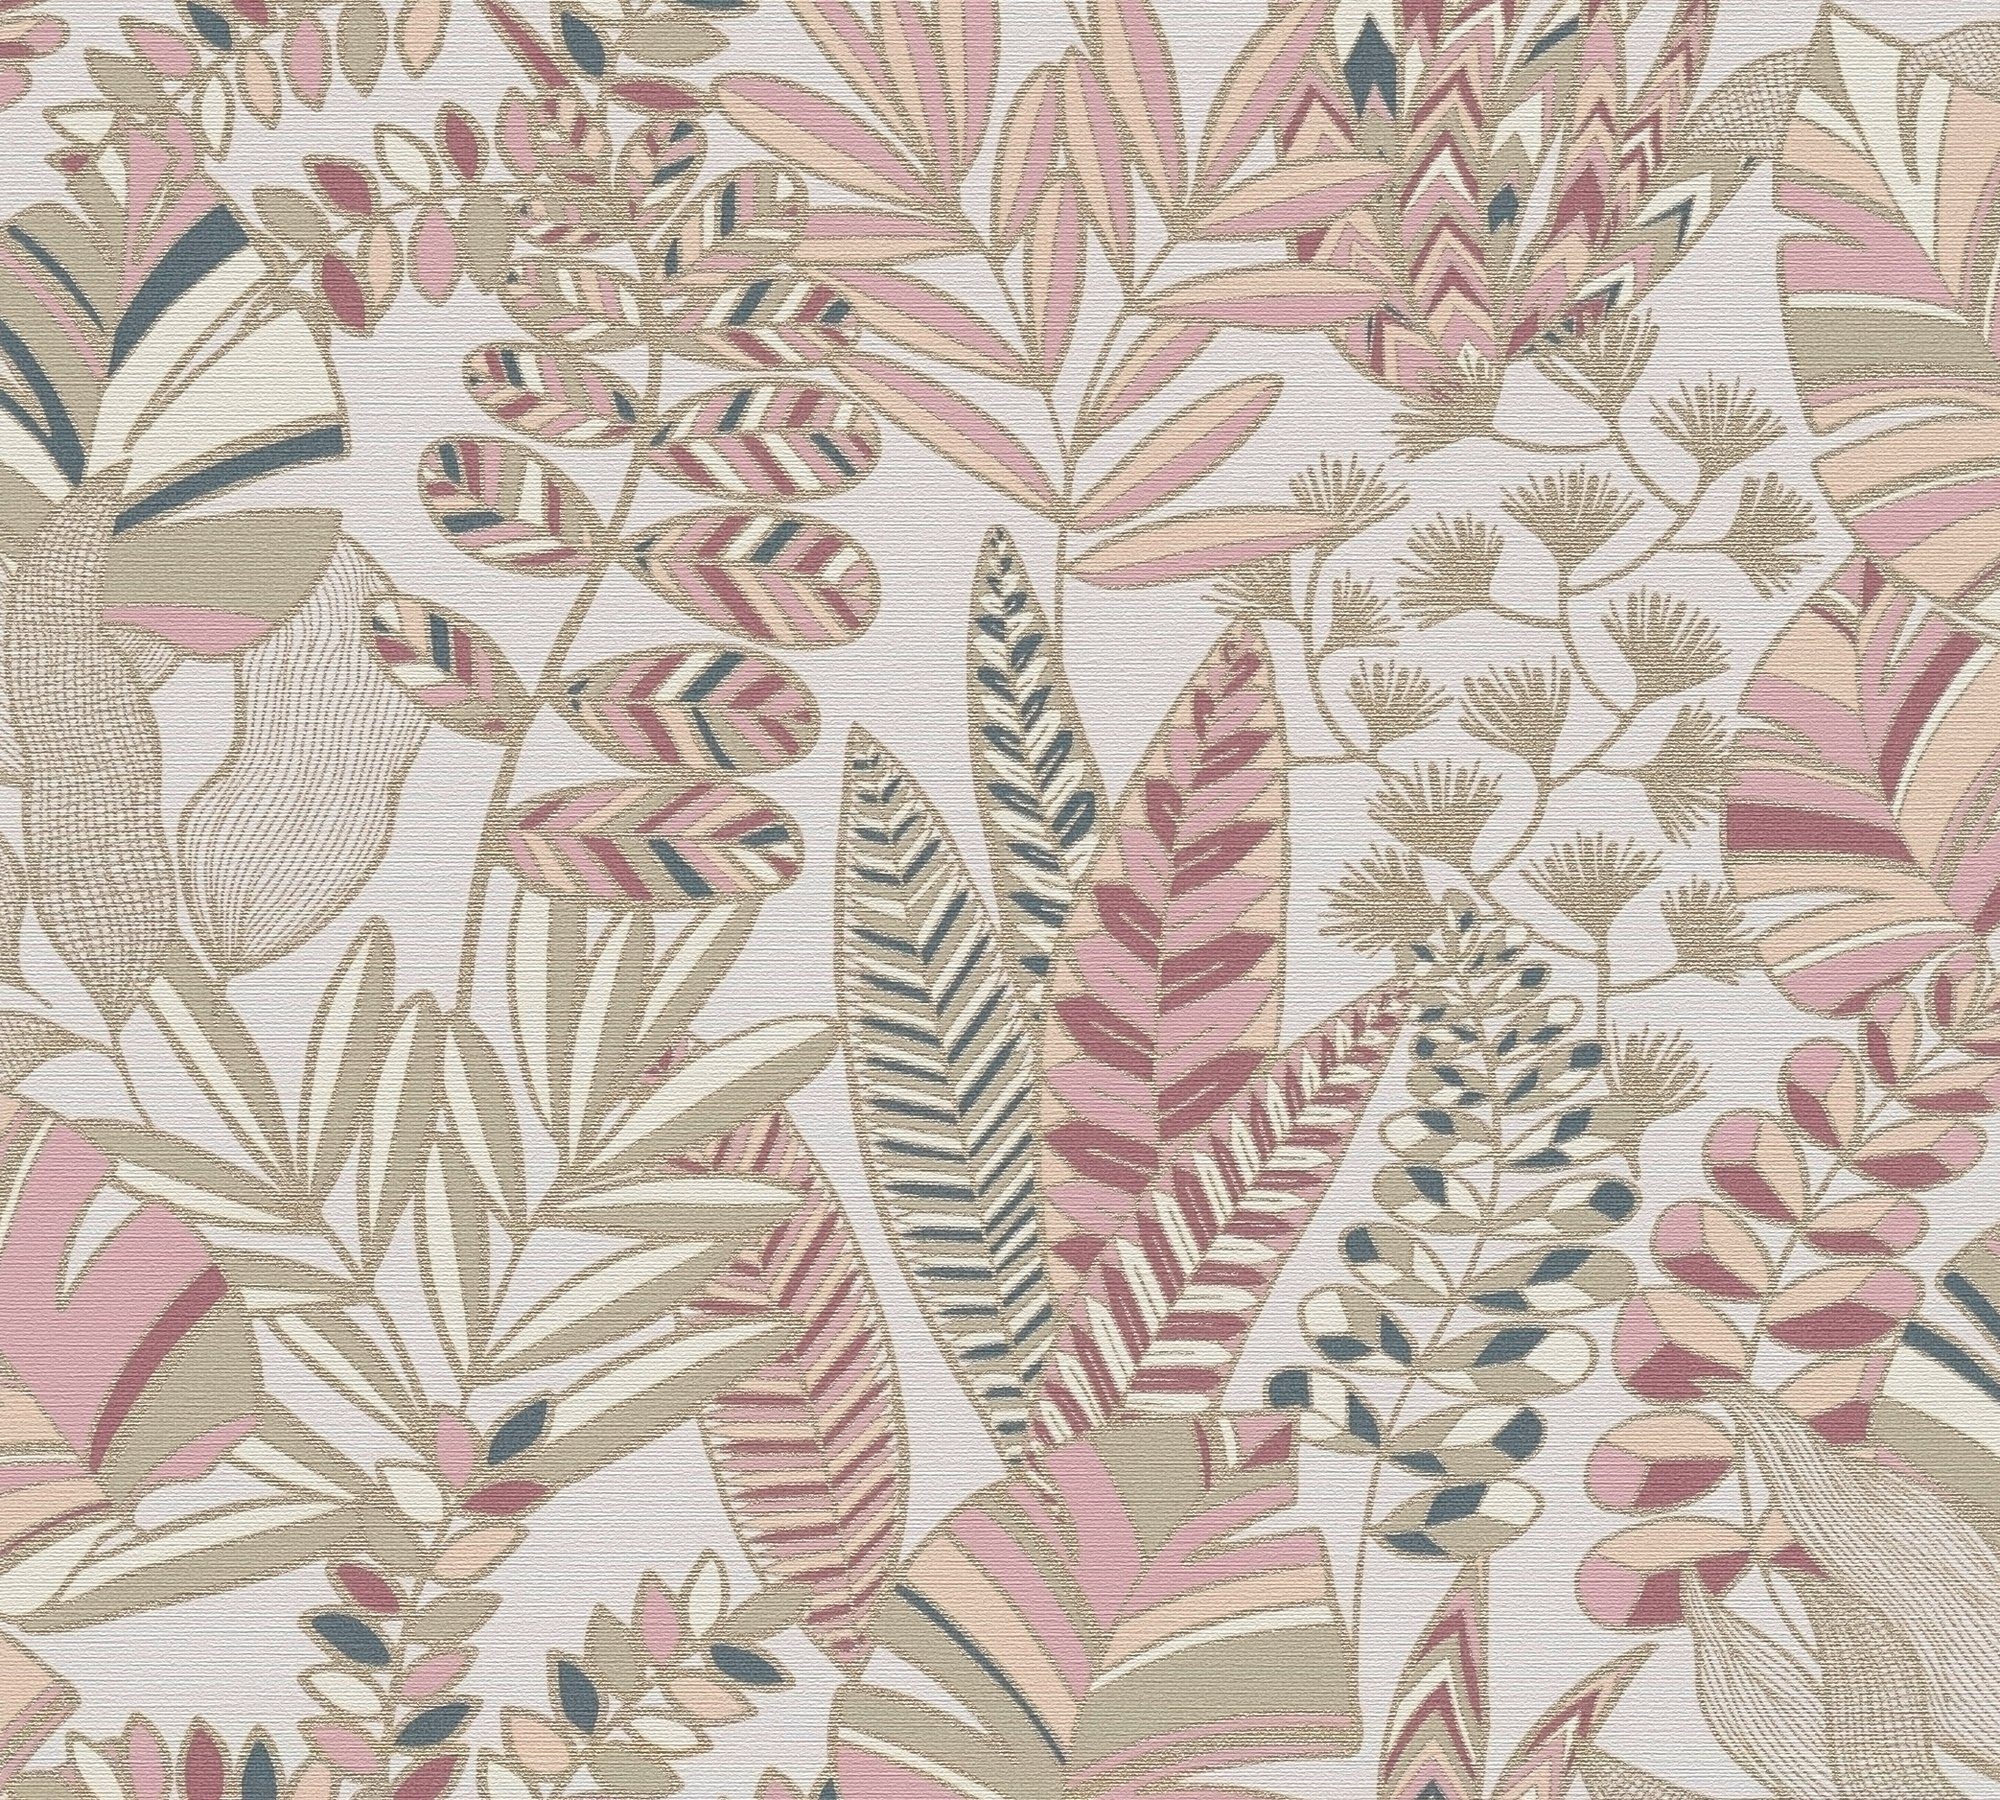 Retro (1 St), Tapete mit Antigua Pflanzen Blättern Vliestapete Floral, Création geprägt, bunt,weiß,pink A.S. Tapete Bunt matt,